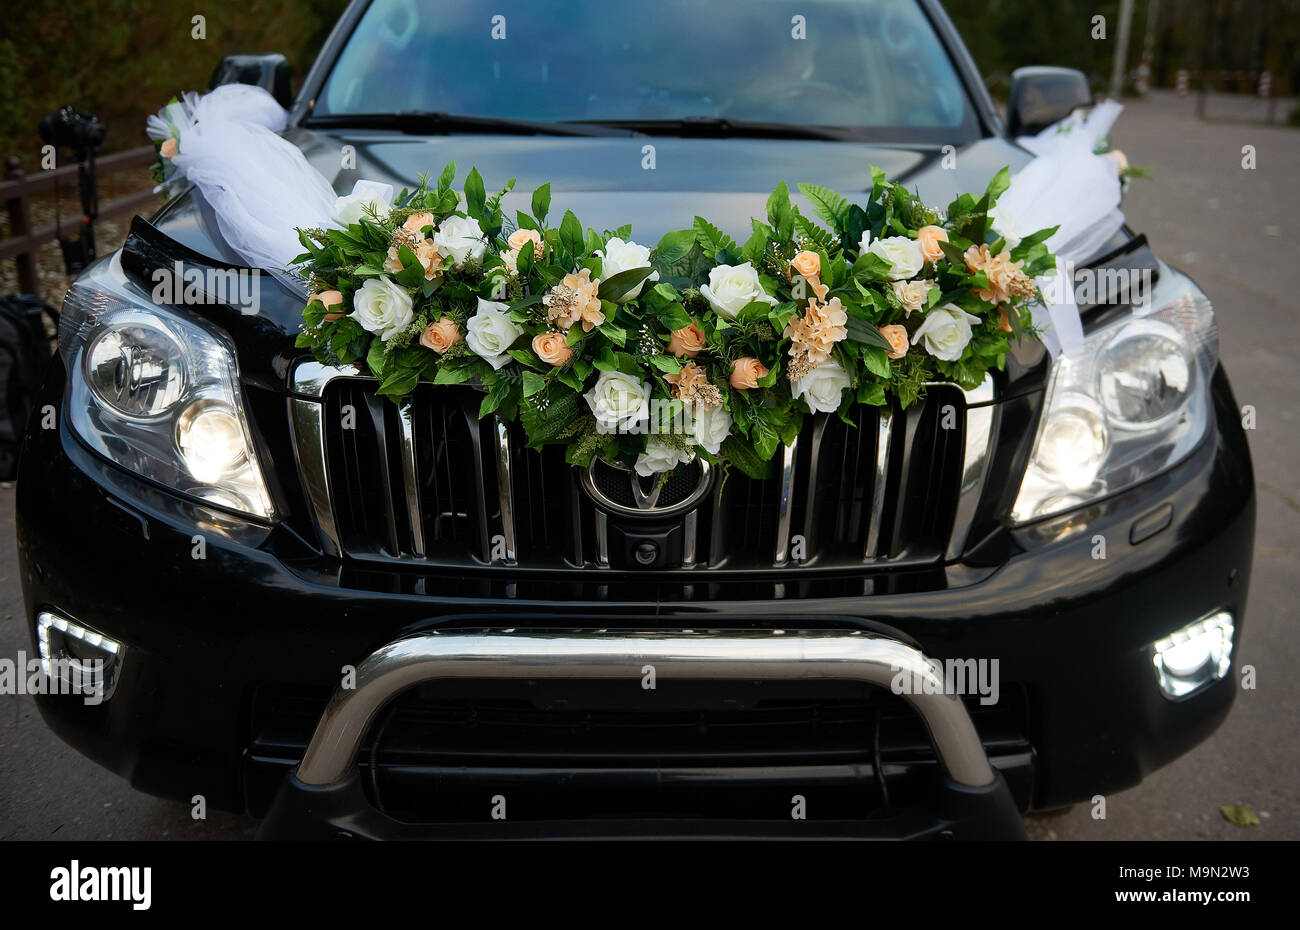 limousine décoration coeur Saint valentin décoration mariage voiture décoration